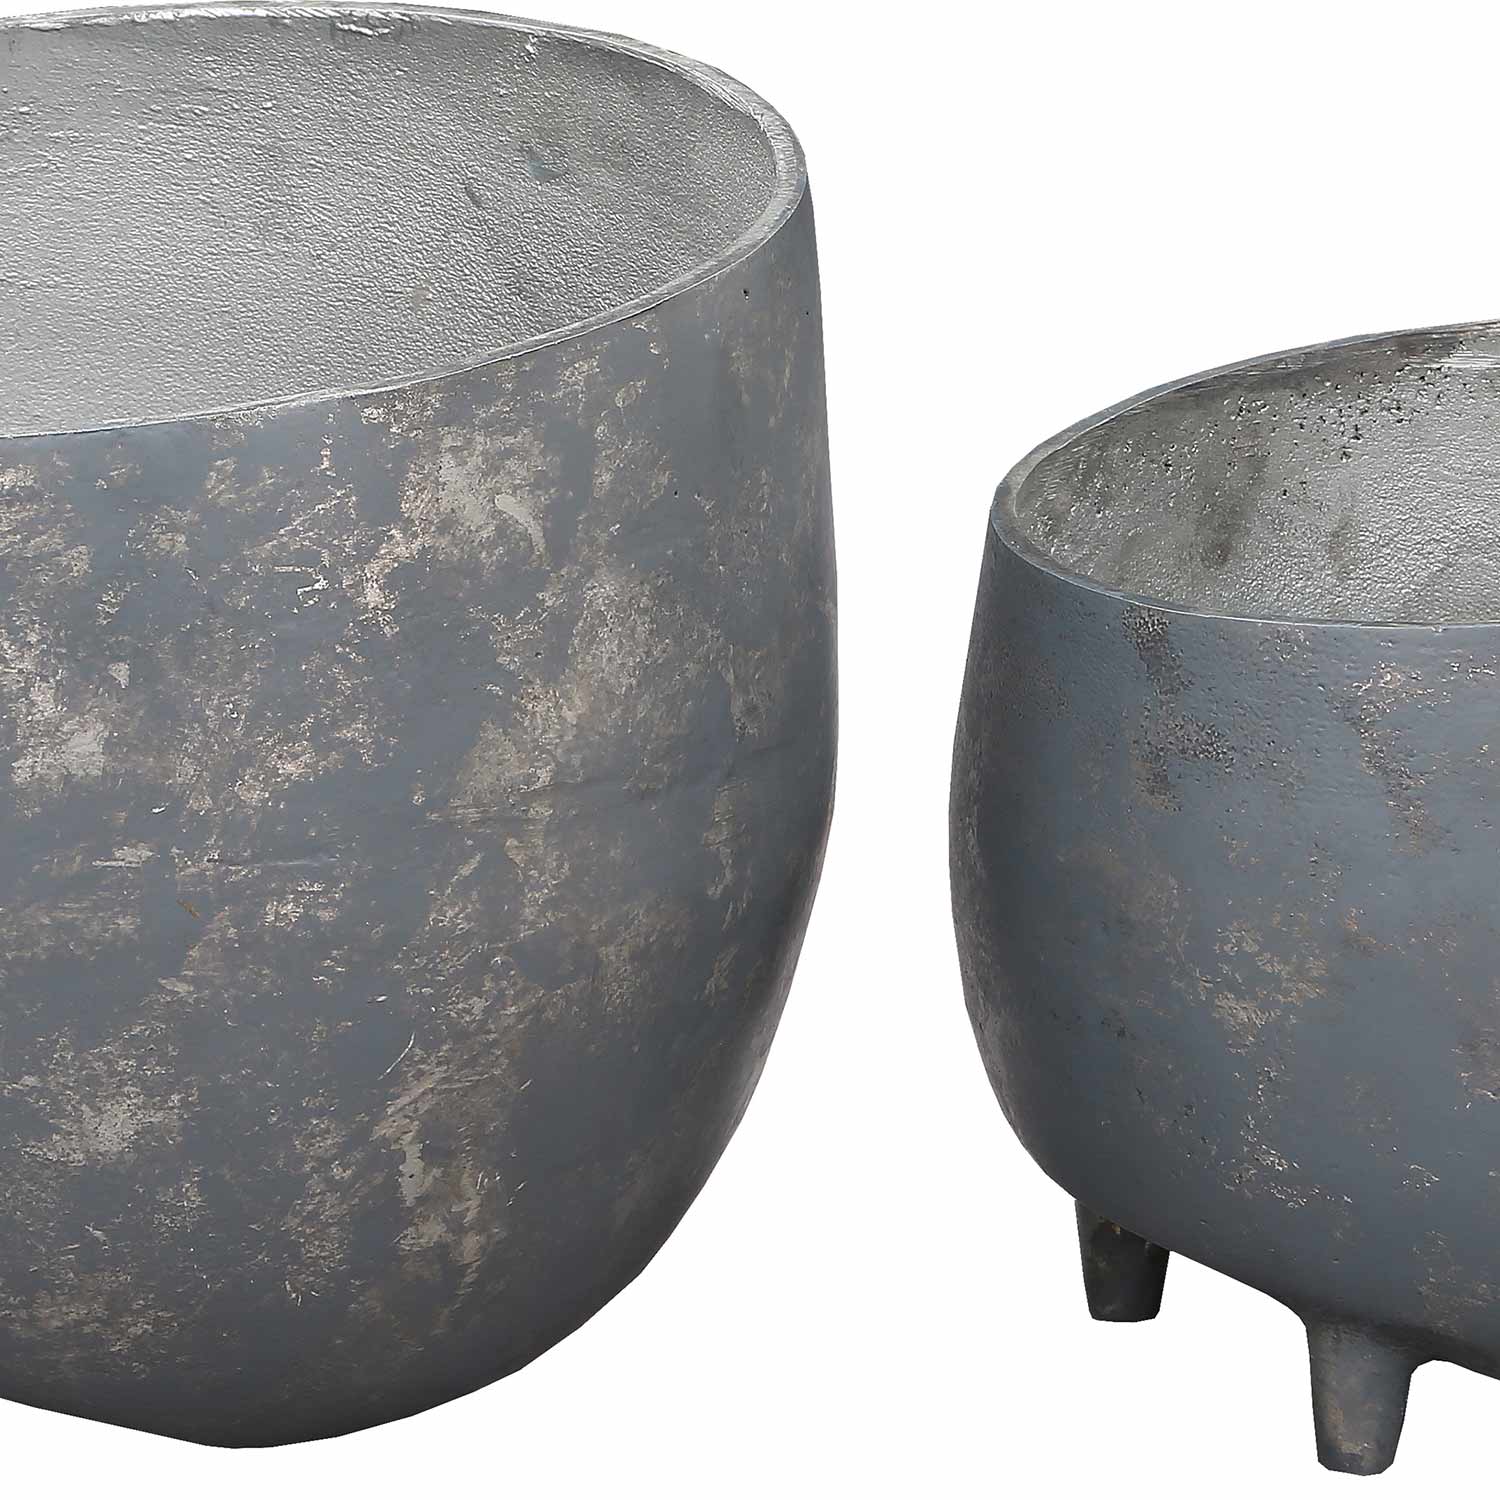 Ren-Wil Declan Outdoor Vase - Distressed Cement